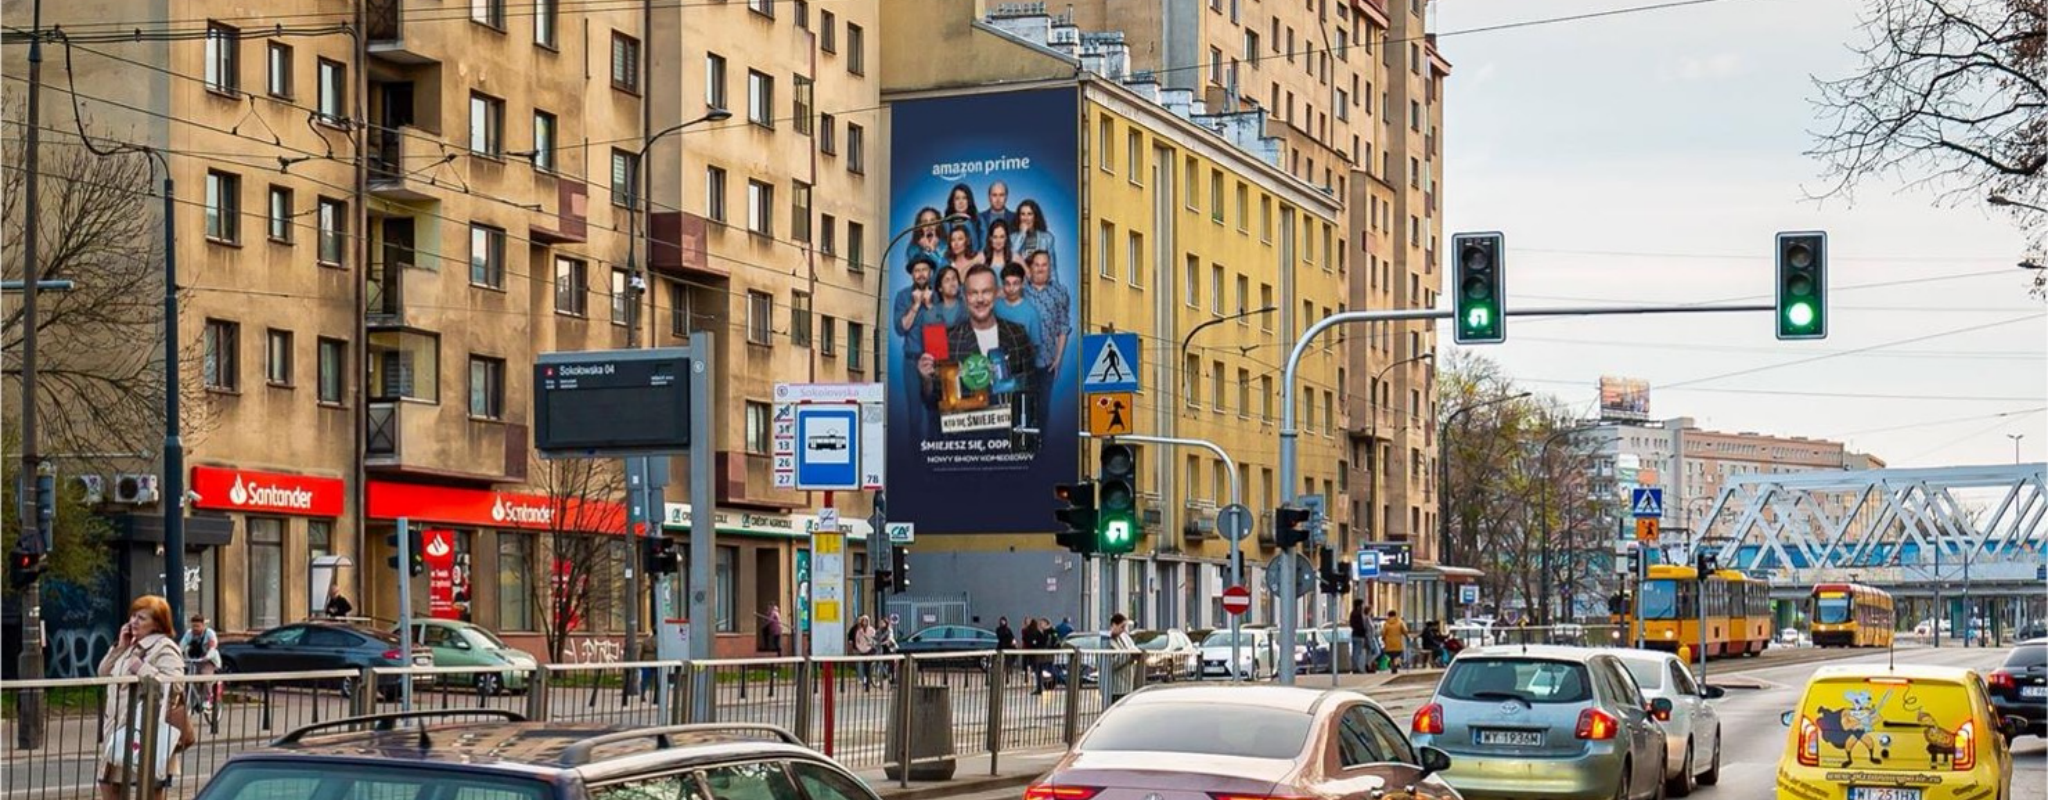 Reklama na Wolskiej w Warszawie